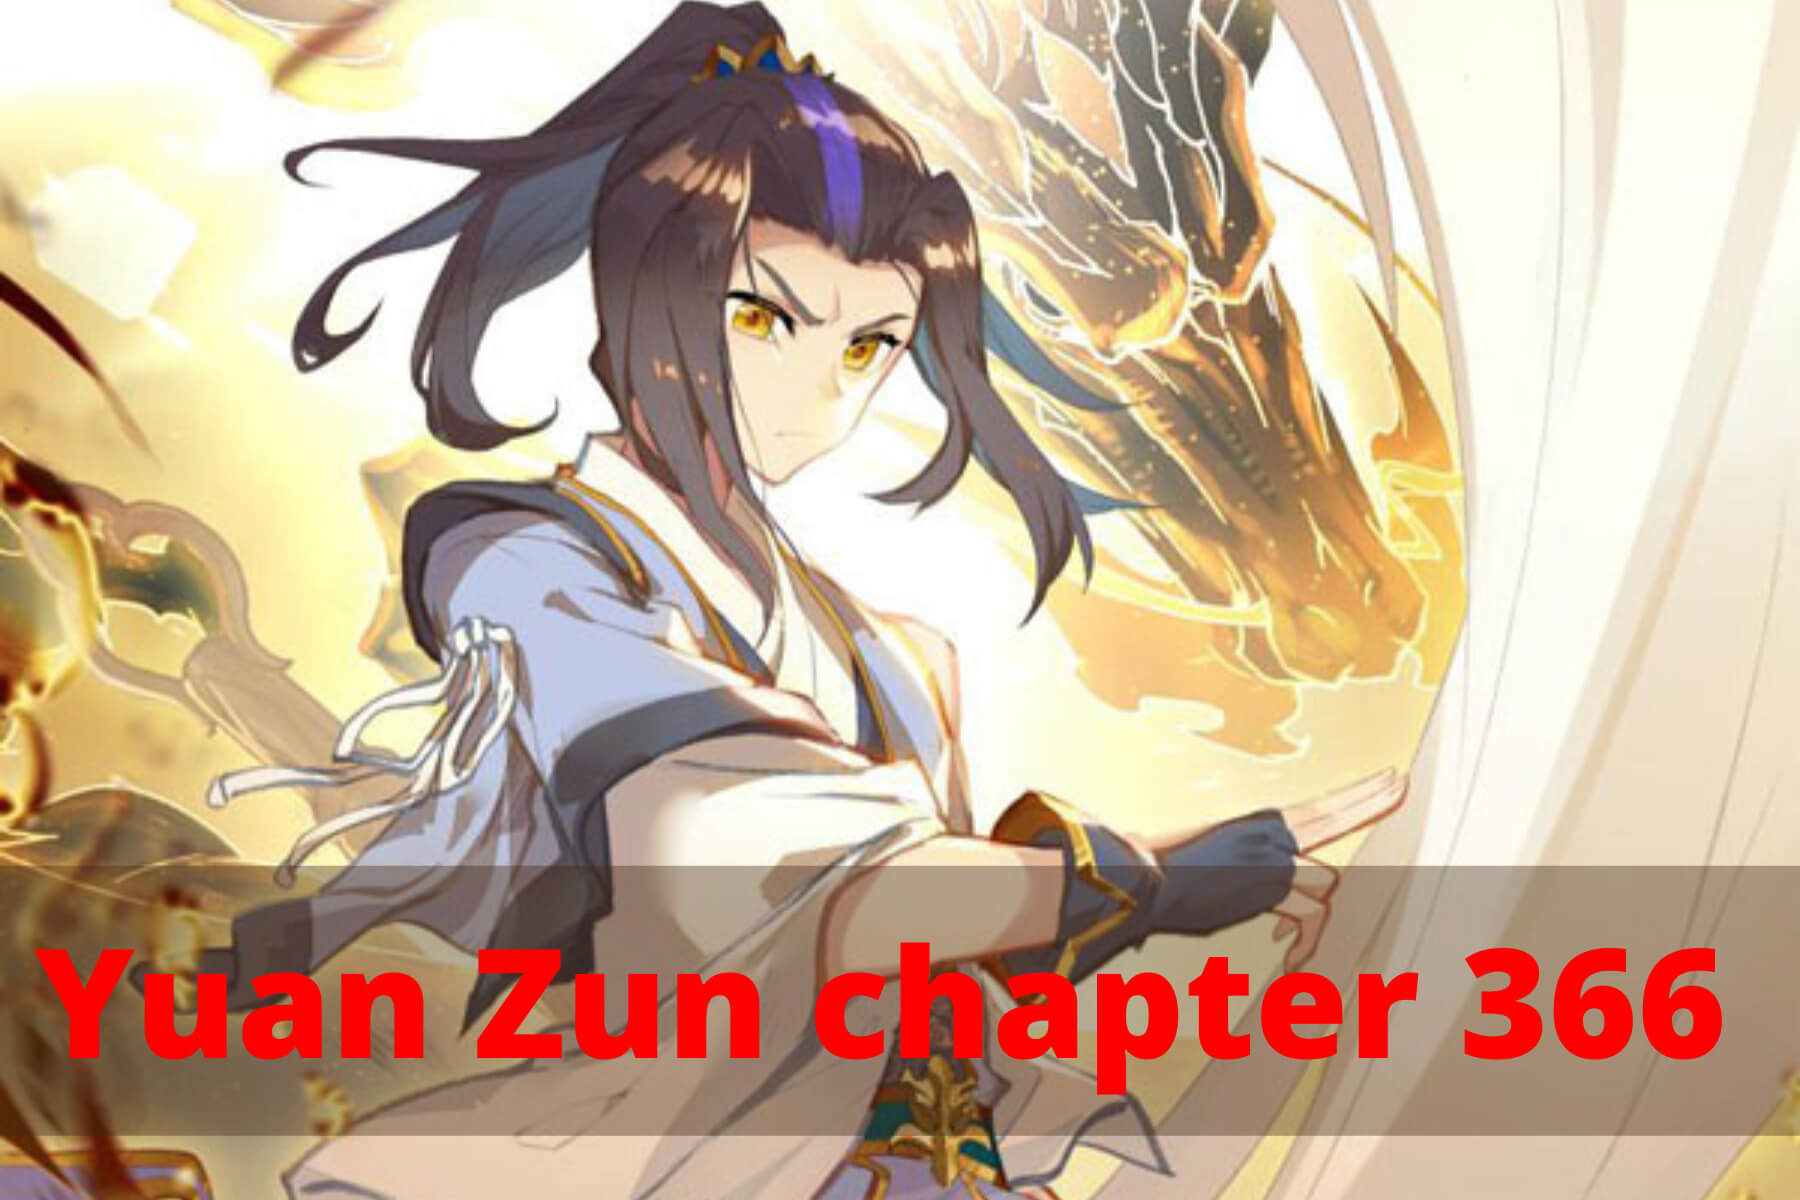 Yuan Zun chapter 366 Release Date